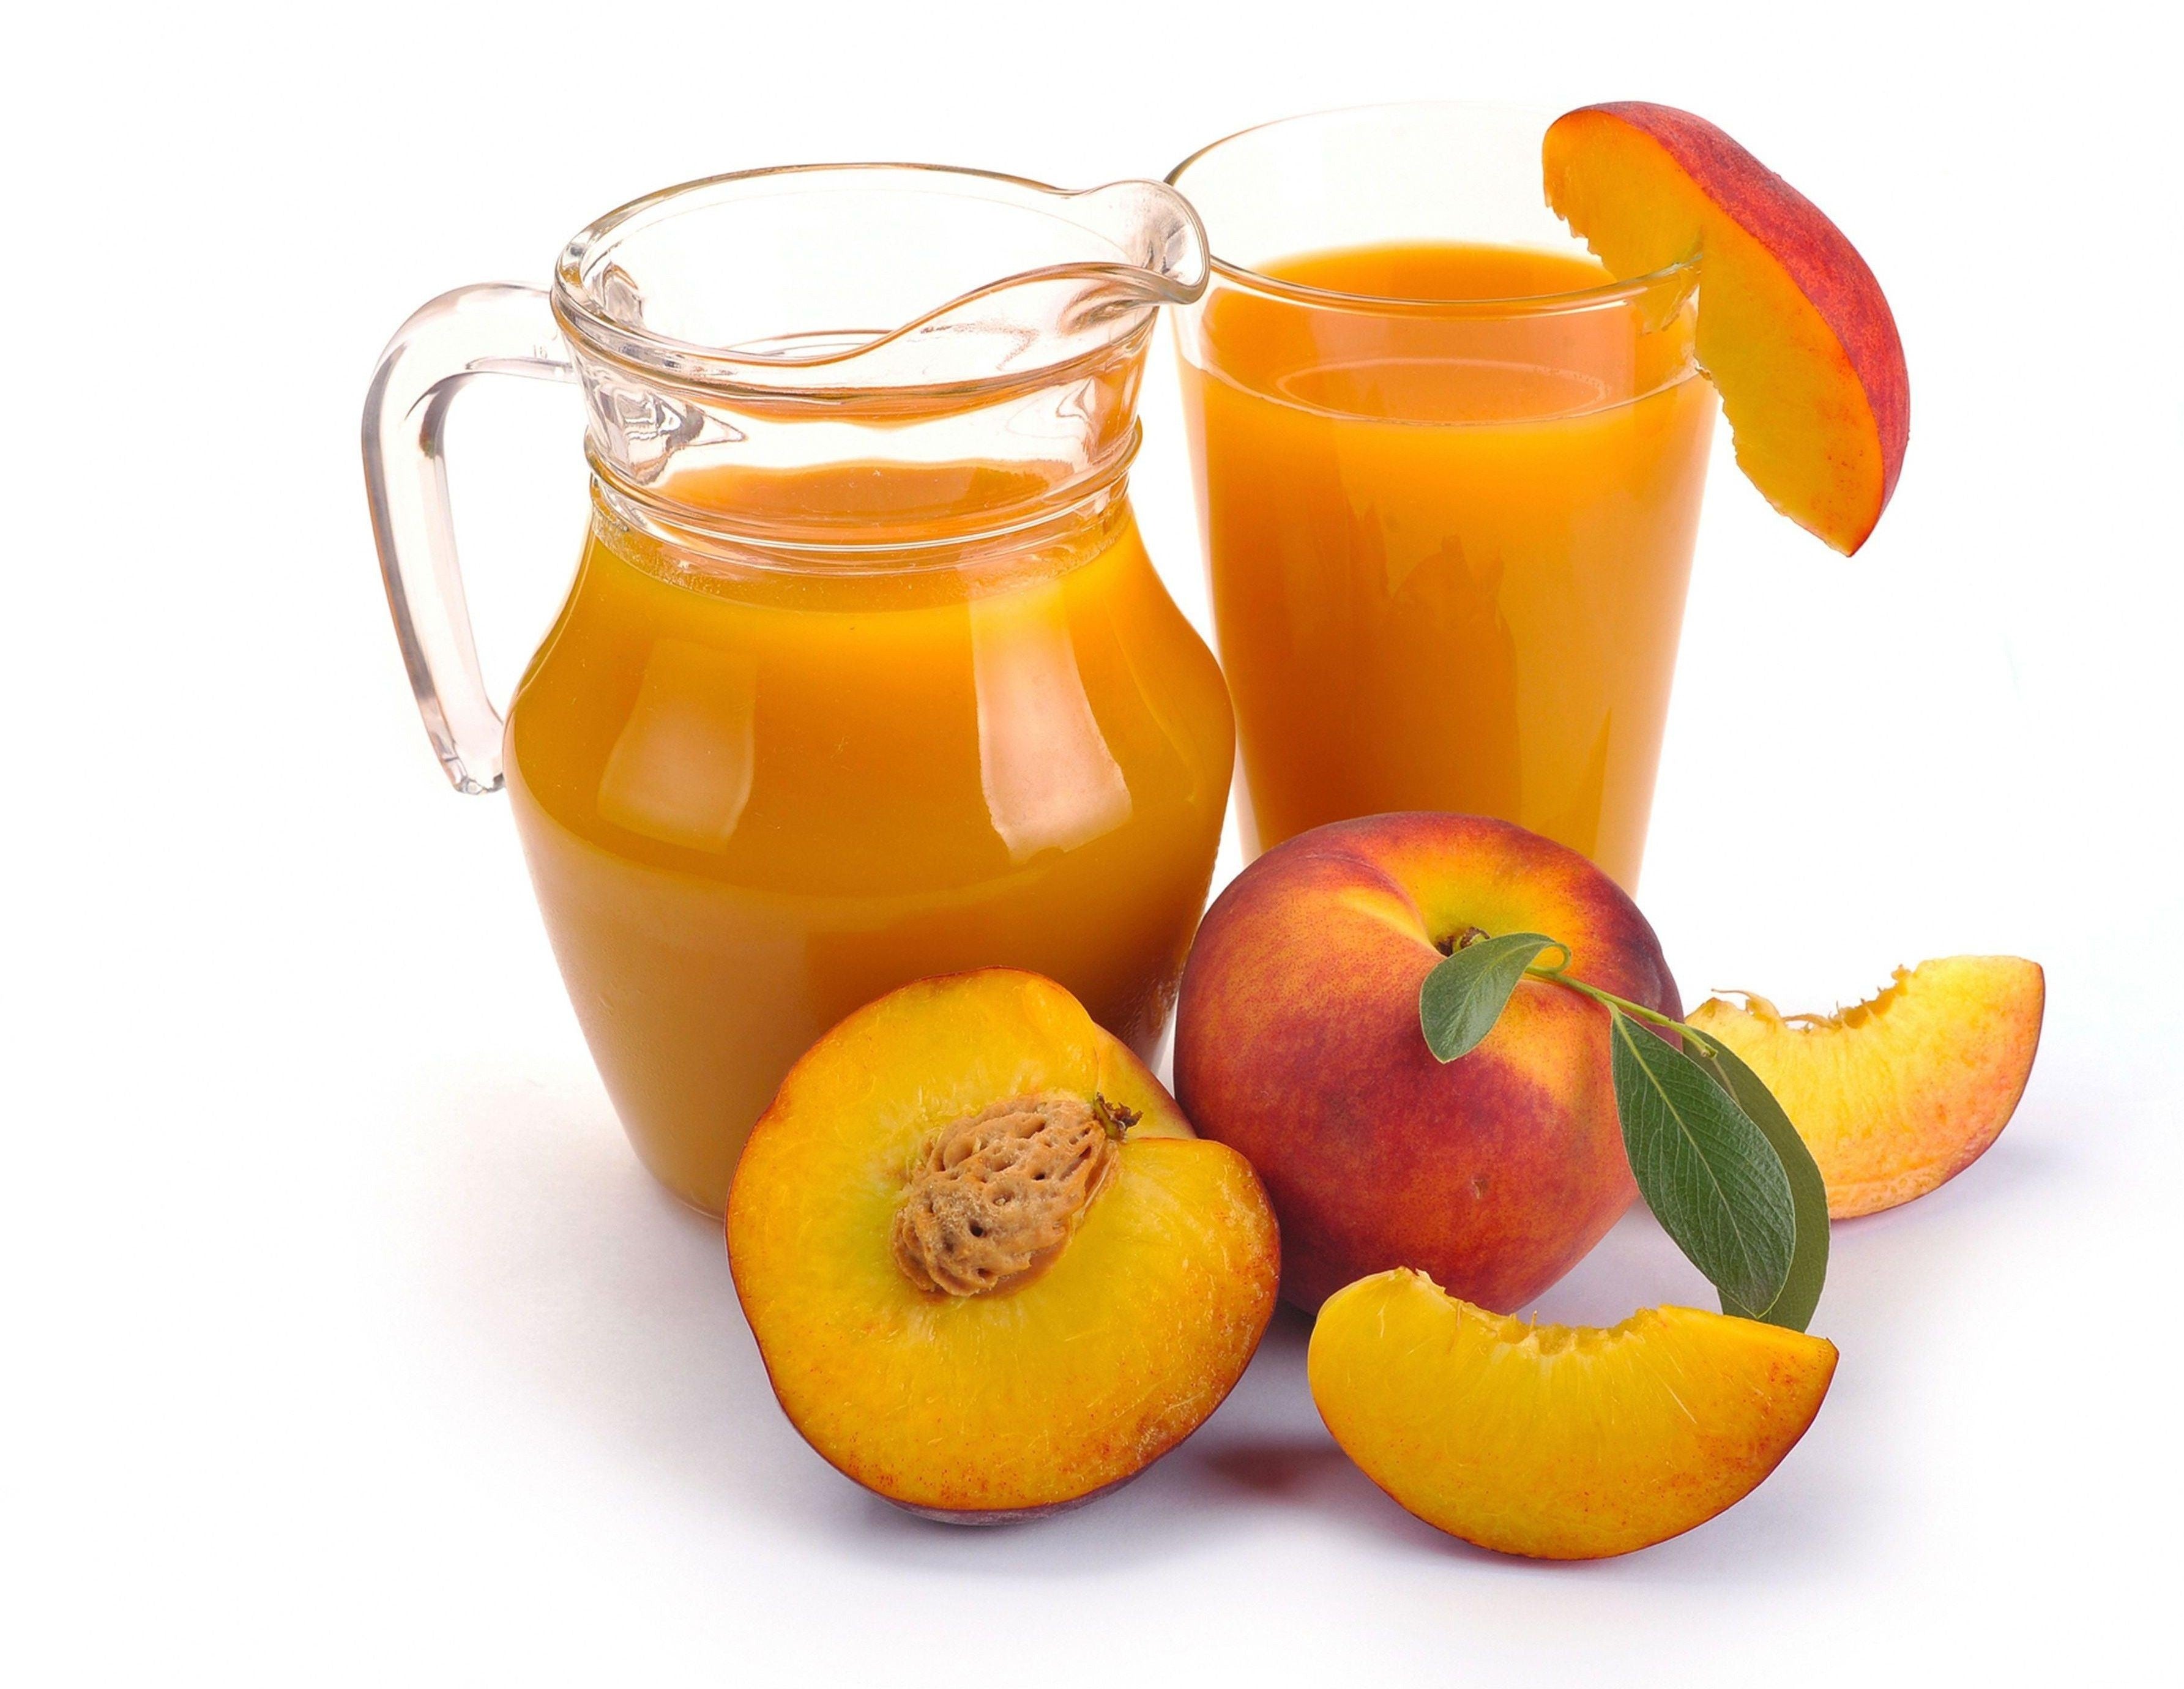 Suco de Pêssgo Compal (200ml) Unidade - Compal Peach Juice (200ml) Unit